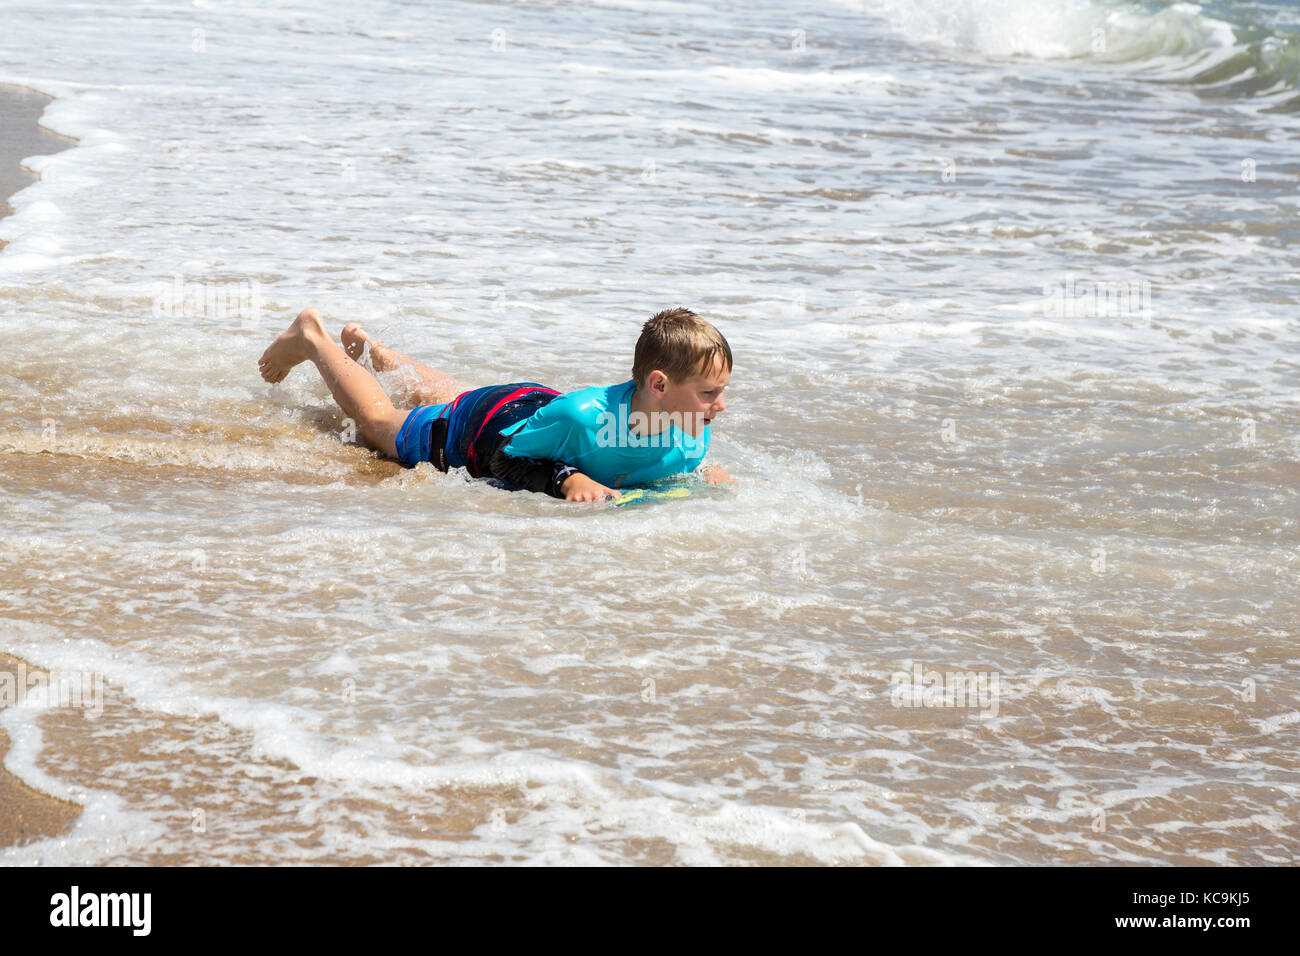 Avon, Outer Banks, North Carolina, USA. Kinder in der Brandung. Junge am Strand mit seinem Boogie Board. Stockfoto